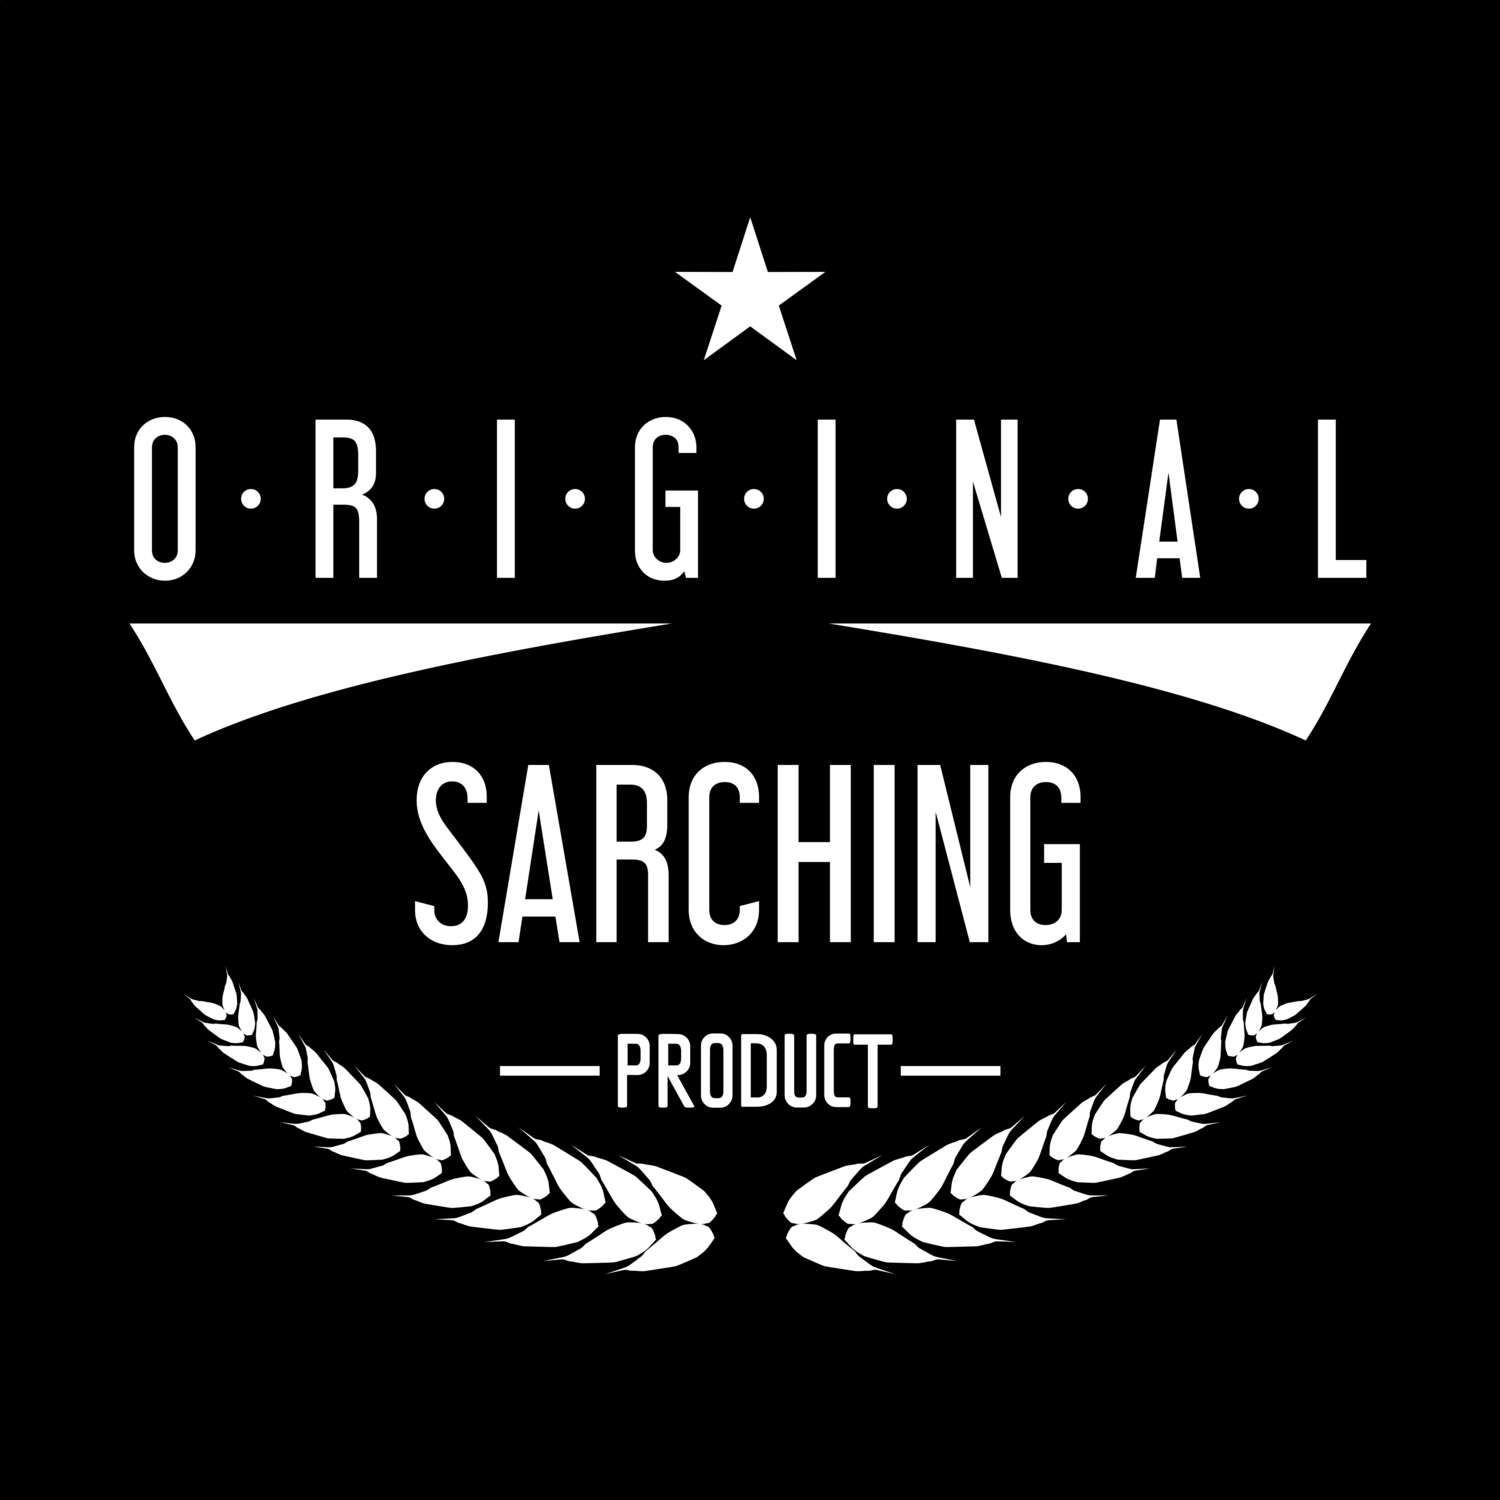 Sarching T-Shirt »Original Product«